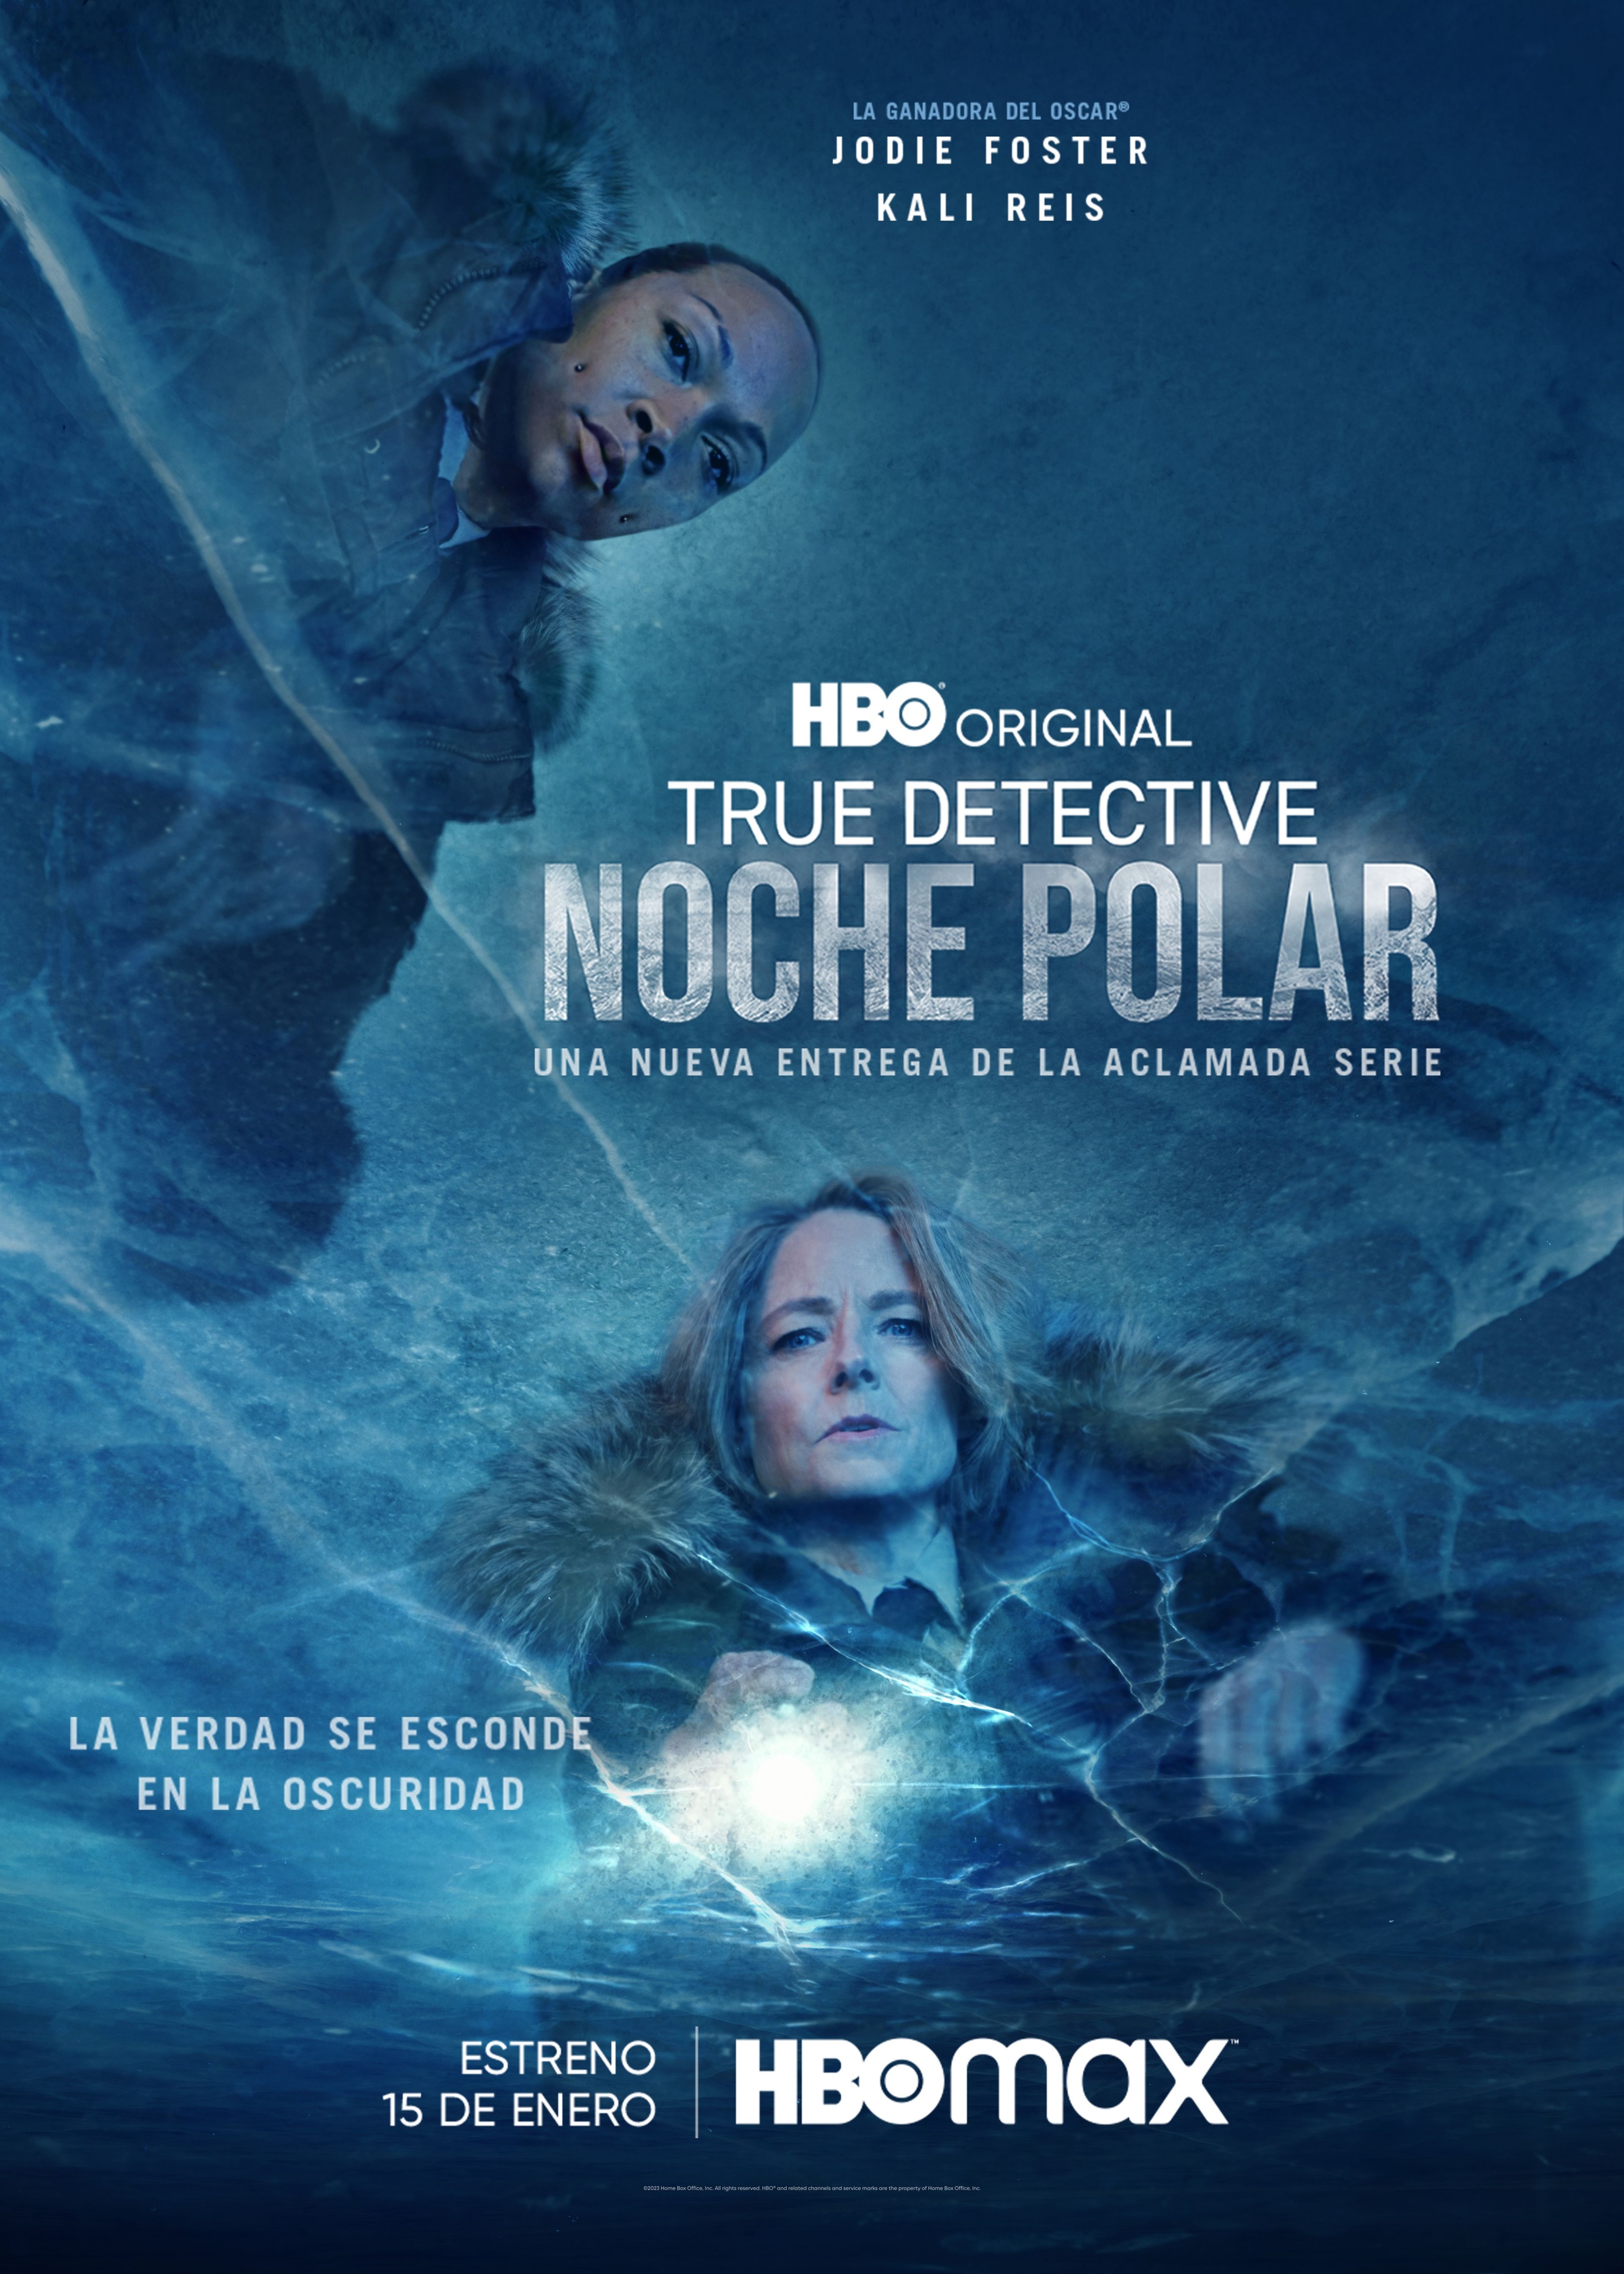 Nuevo póster de True Detective Noche polar